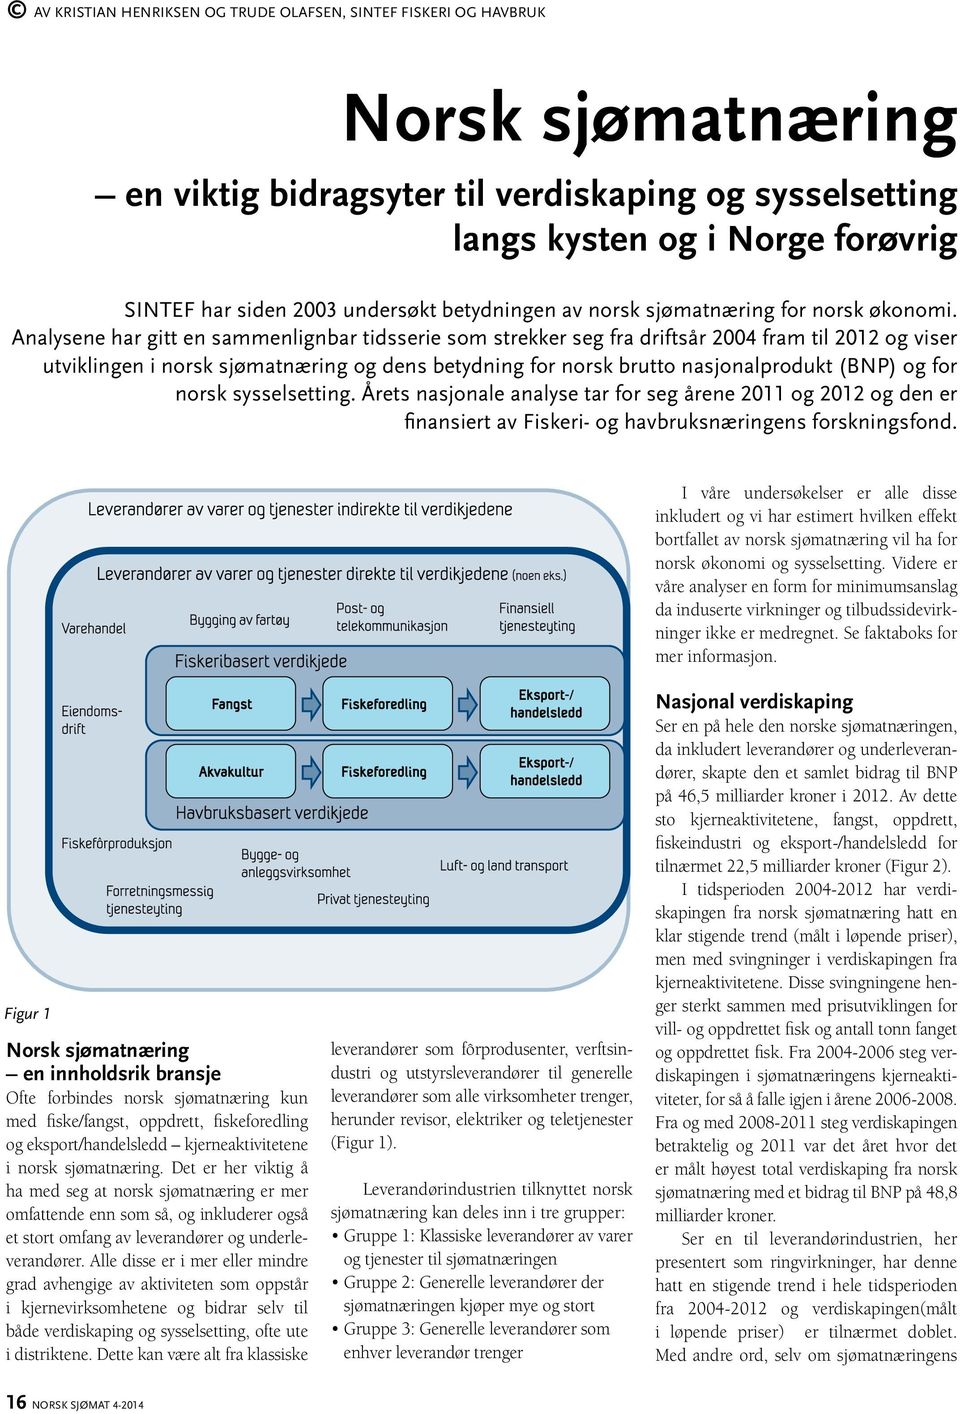 Analysene har gitt en sammenlignbar tidsserie som strekker seg fra driftsår 2004 fram til 2012 og viser utviklingen i norsk sjømatnæring og dens betydning for norsk brutto nasjonalprodukt (BNP) og